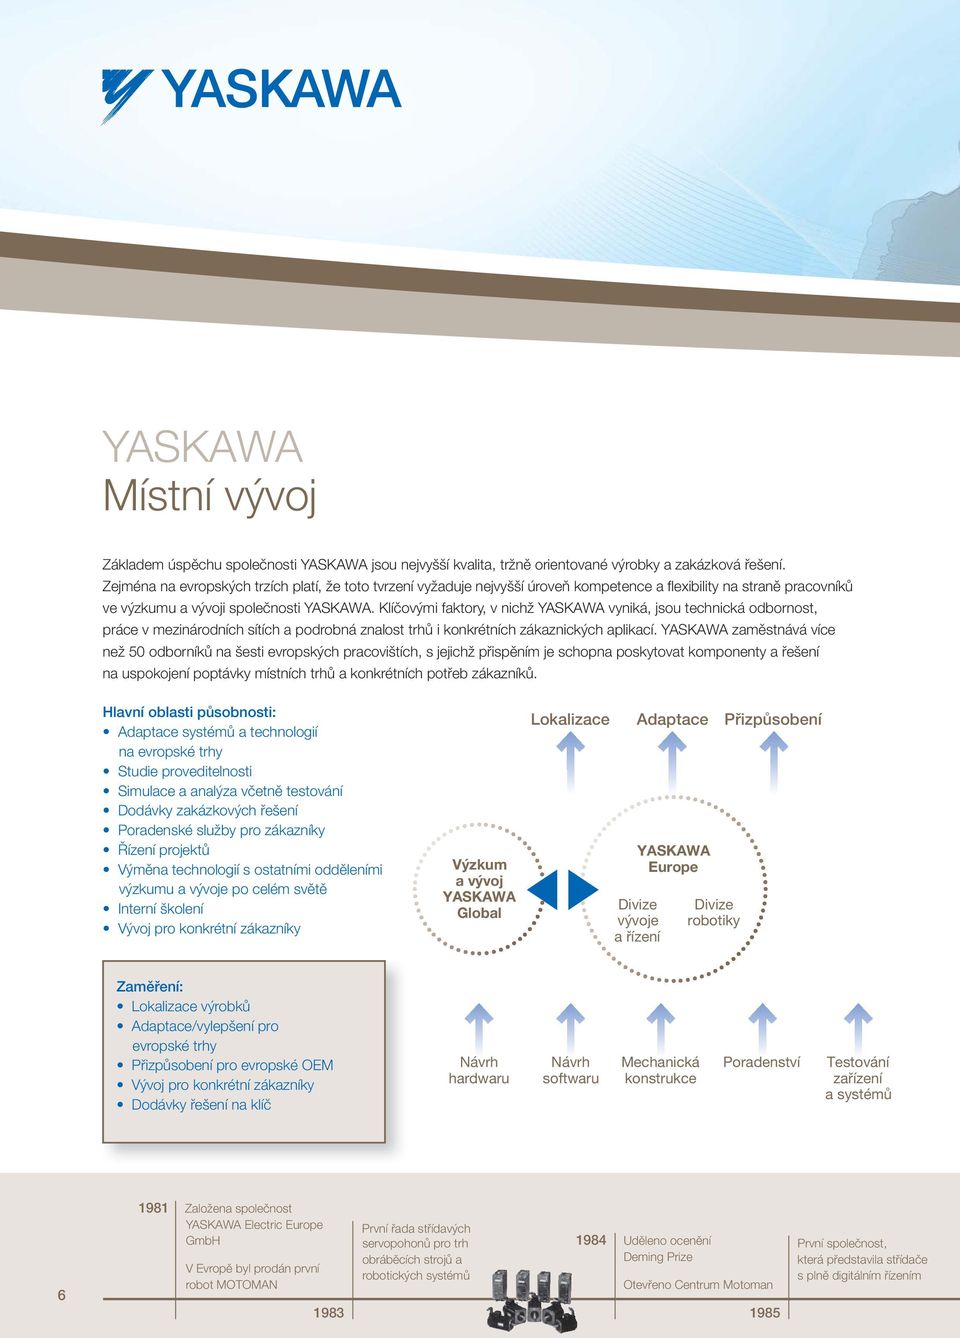 Klíčovými faktory, v nichž YASKAWA vyniká, jsou technická odbornost, práce v mezinárodních sítích a podrobná znalost trhů i konkrétních zákaznických aplikací.